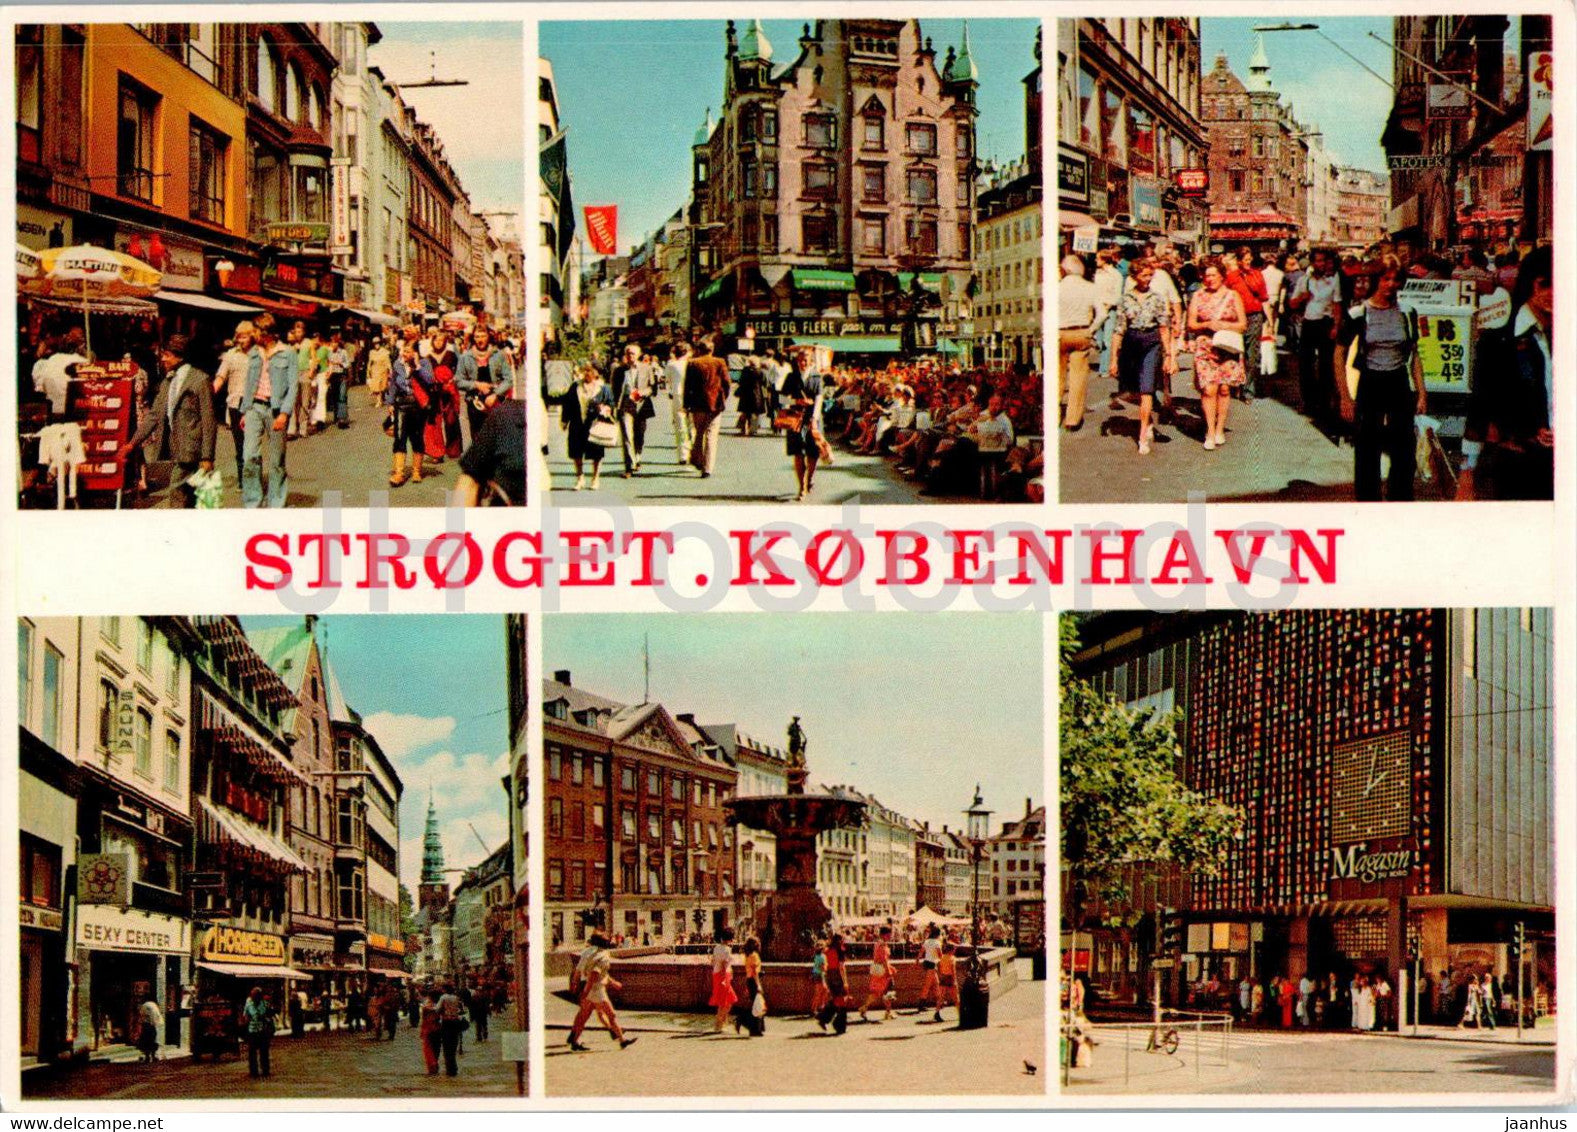 Copenhagen - Kopenhagen - Stroget - Pedestrian street - multiview - 46 - Denmark - unused - JH Postcards